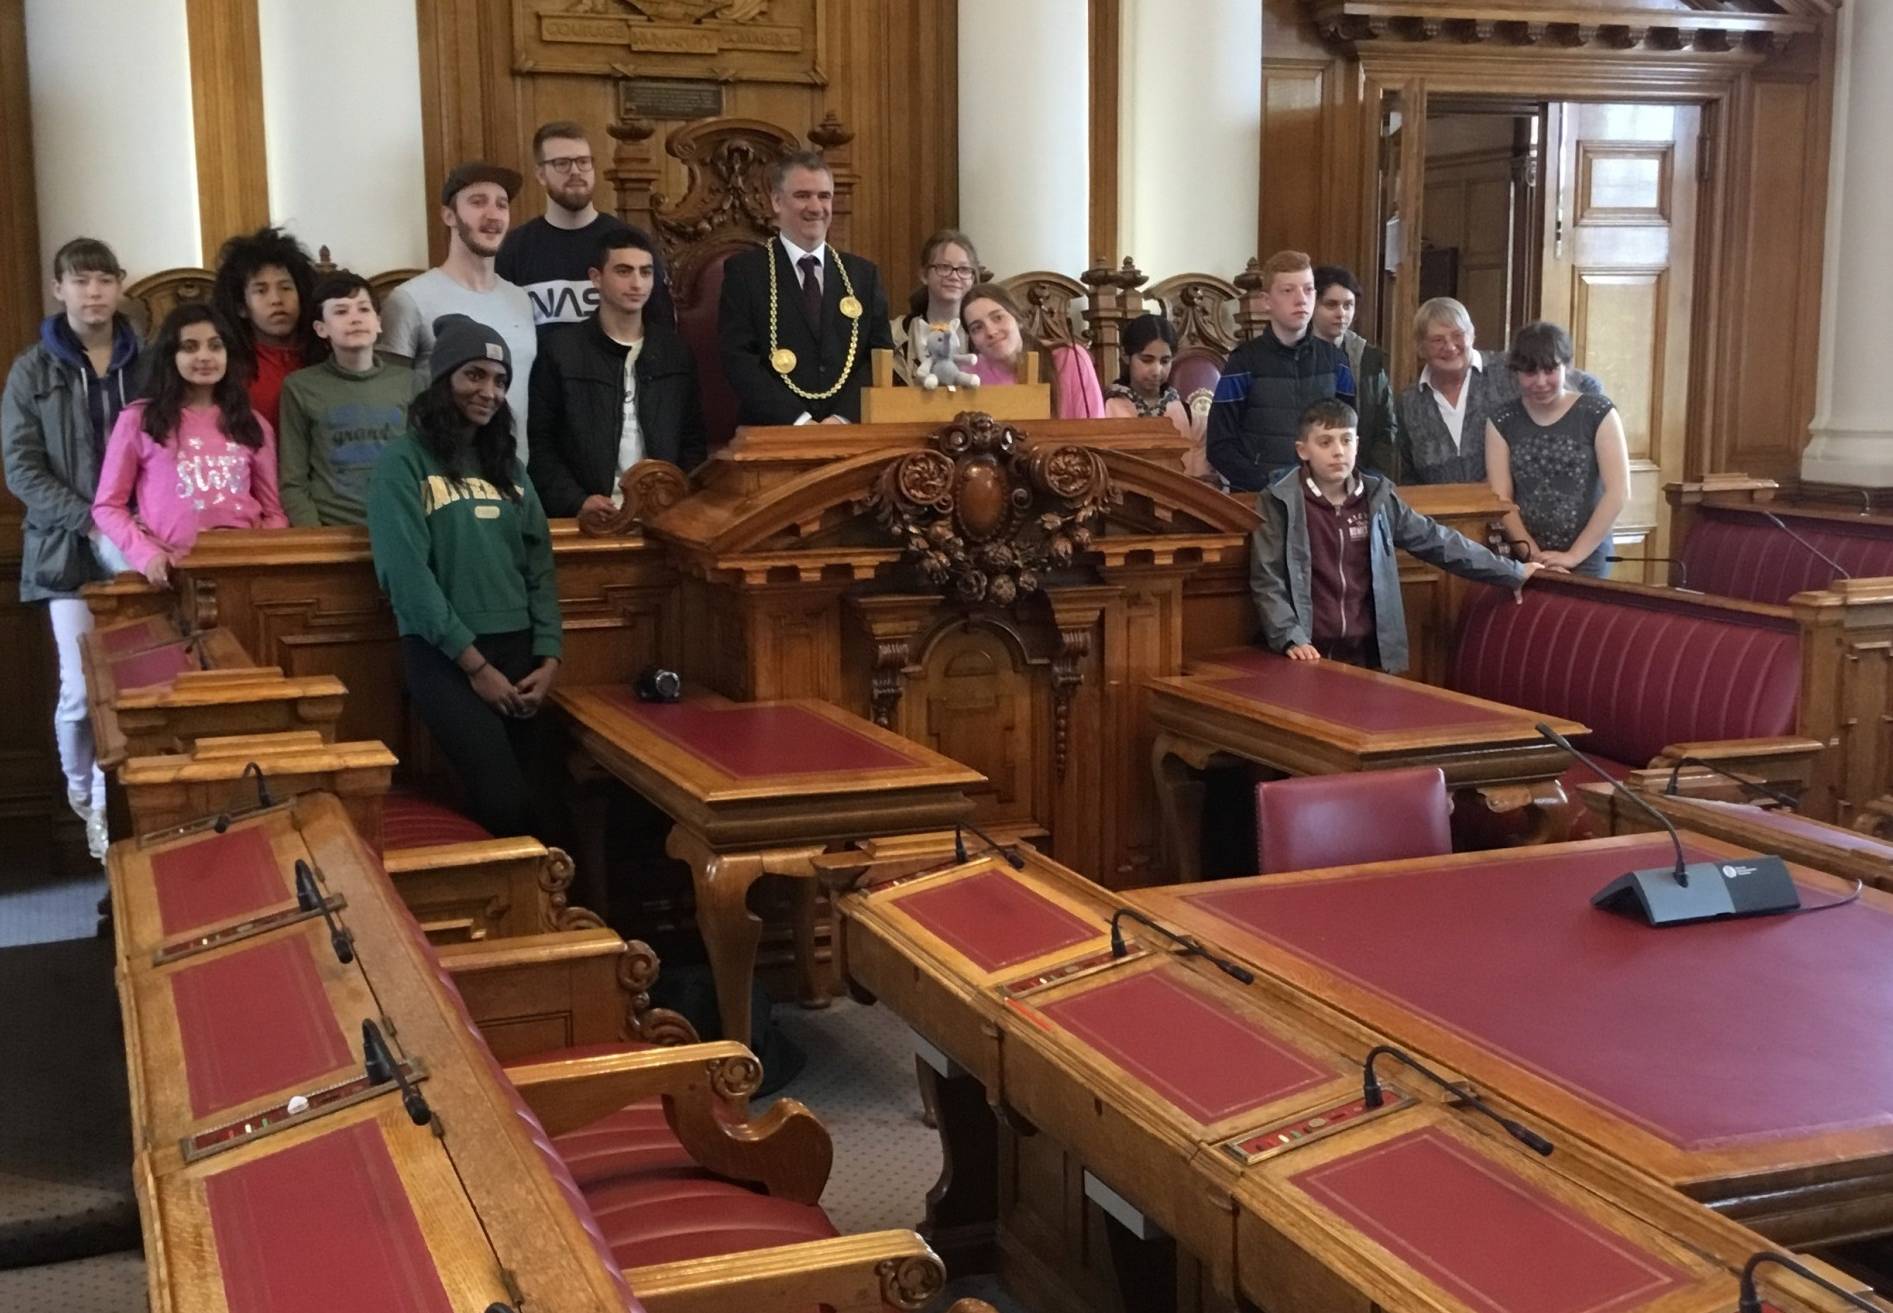  Die Jugendlichen zu Besuch im Rathaus in South Tyneside.  